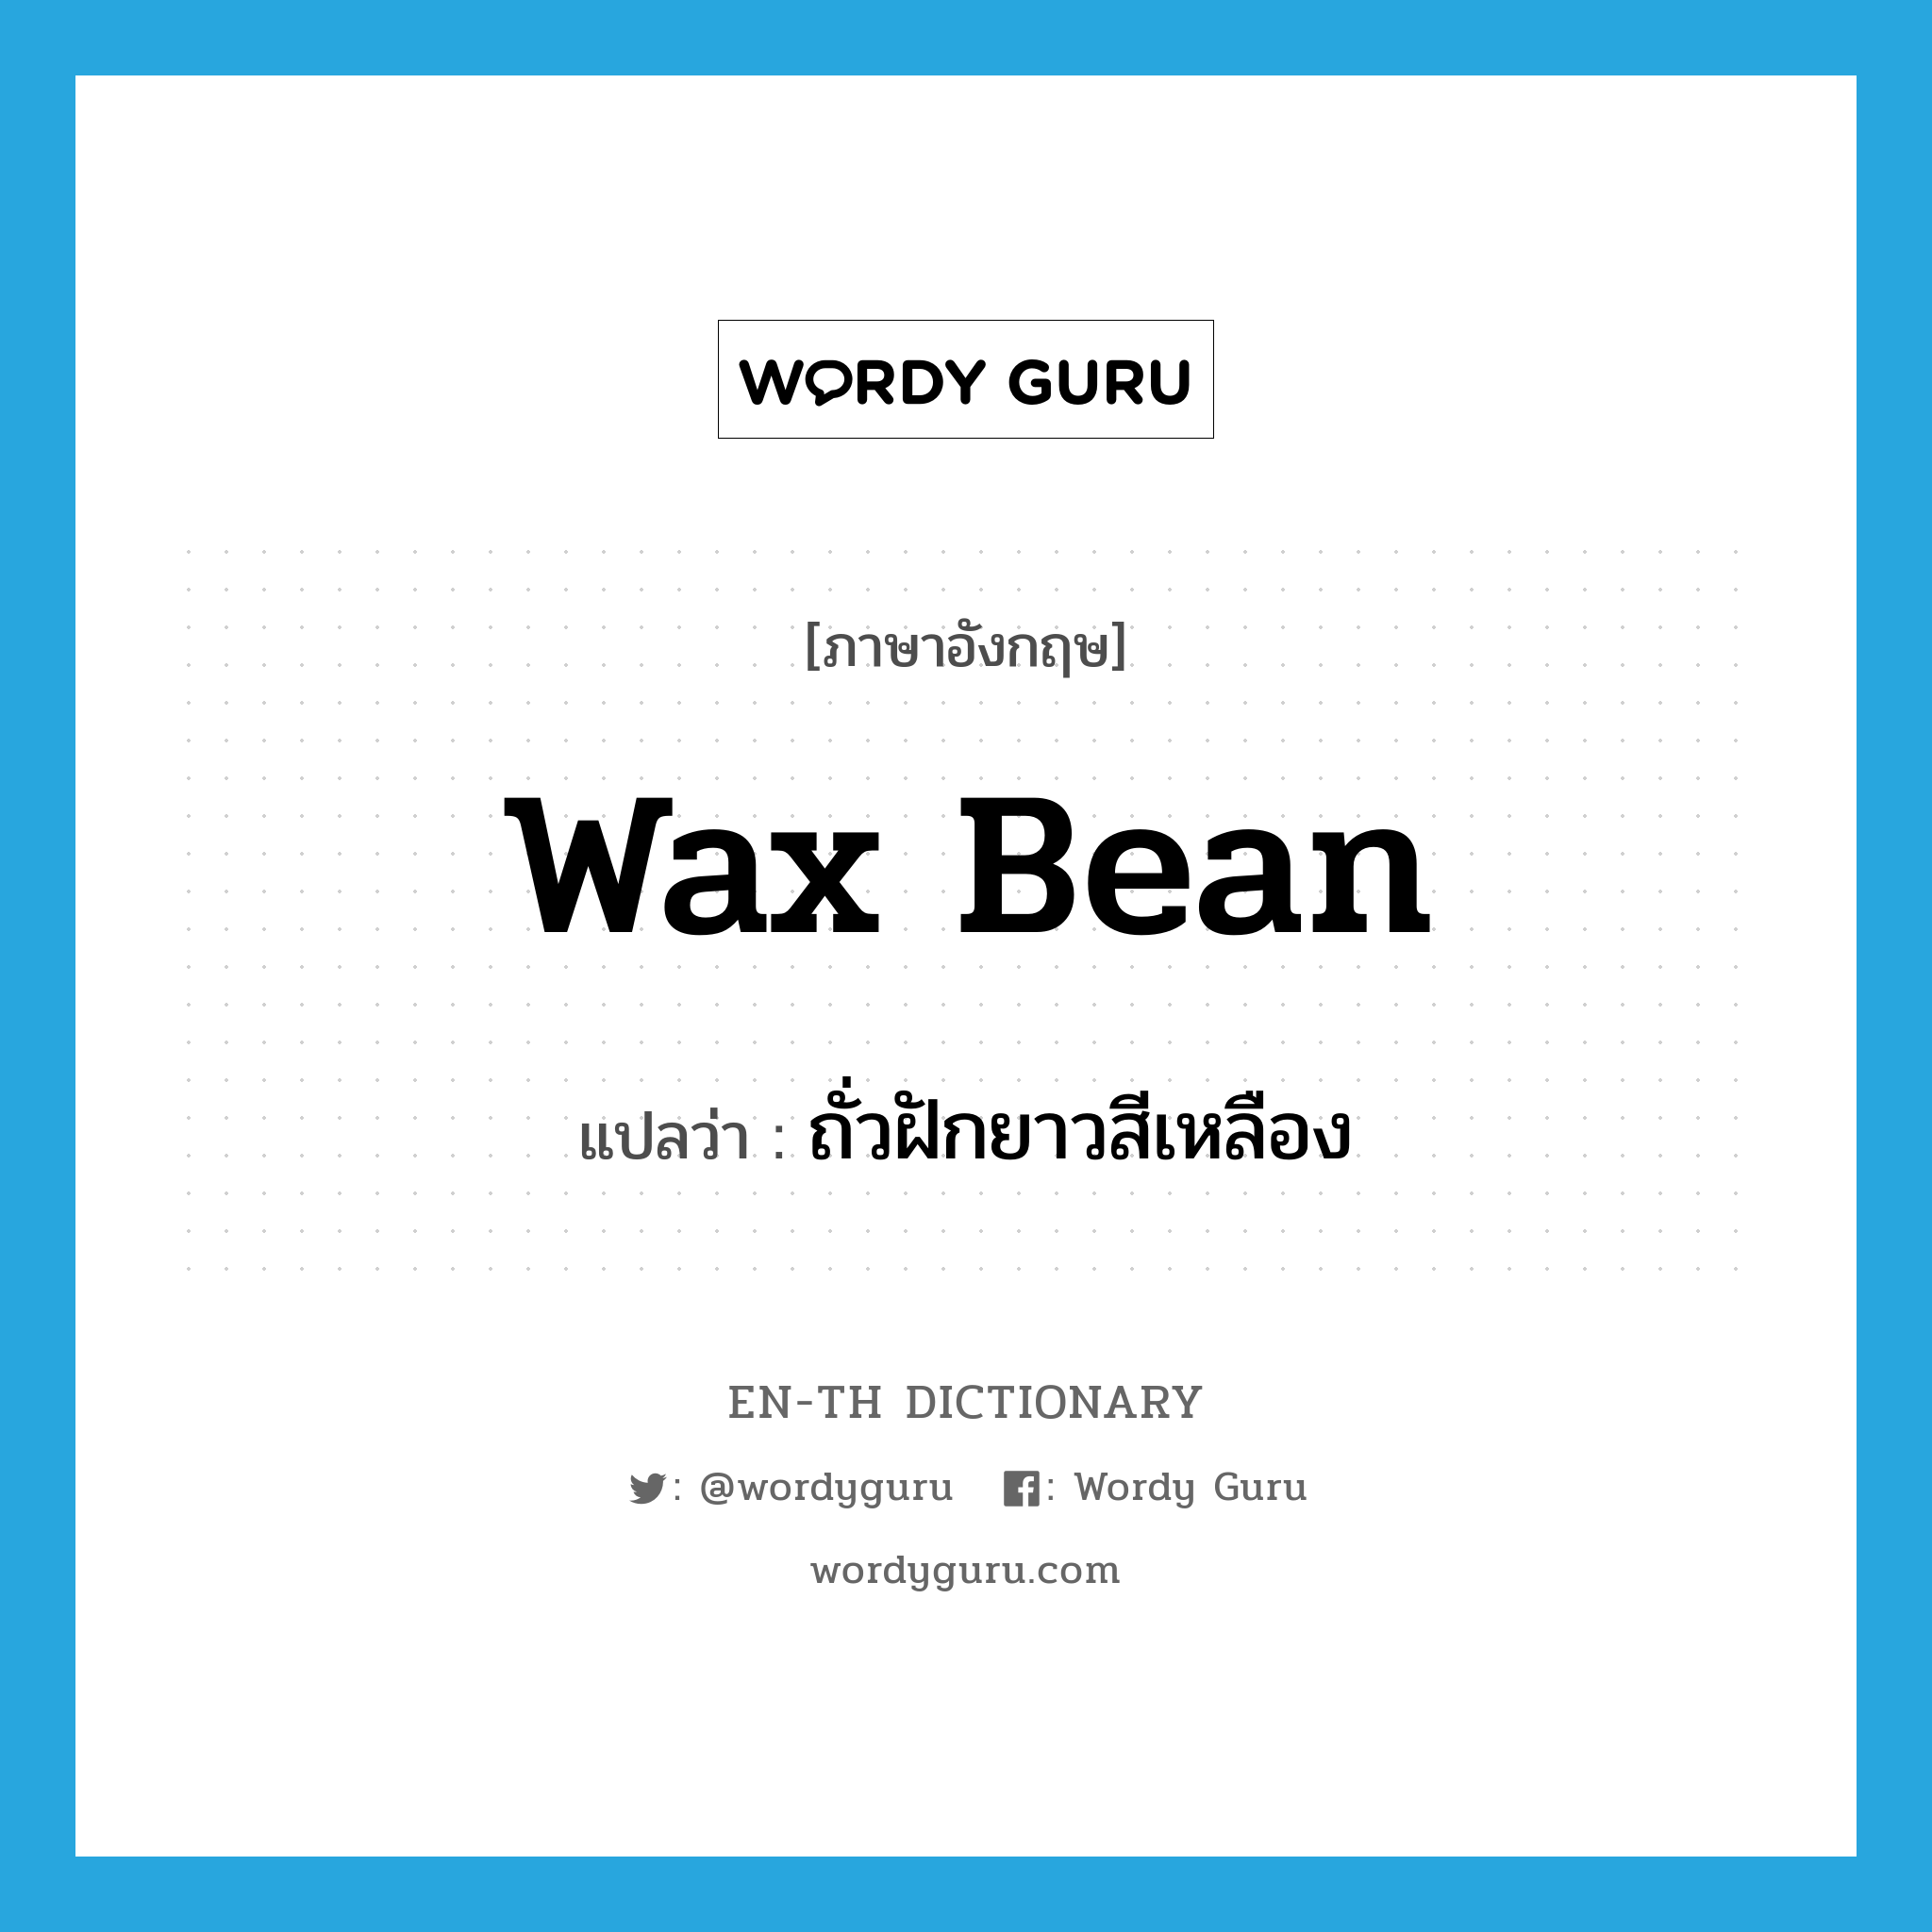 wax bean แปลว่า?, คำศัพท์ภาษาอังกฤษ wax bean แปลว่า ถั่วฝักยาวสีเหลือง ประเภท N หมวด N